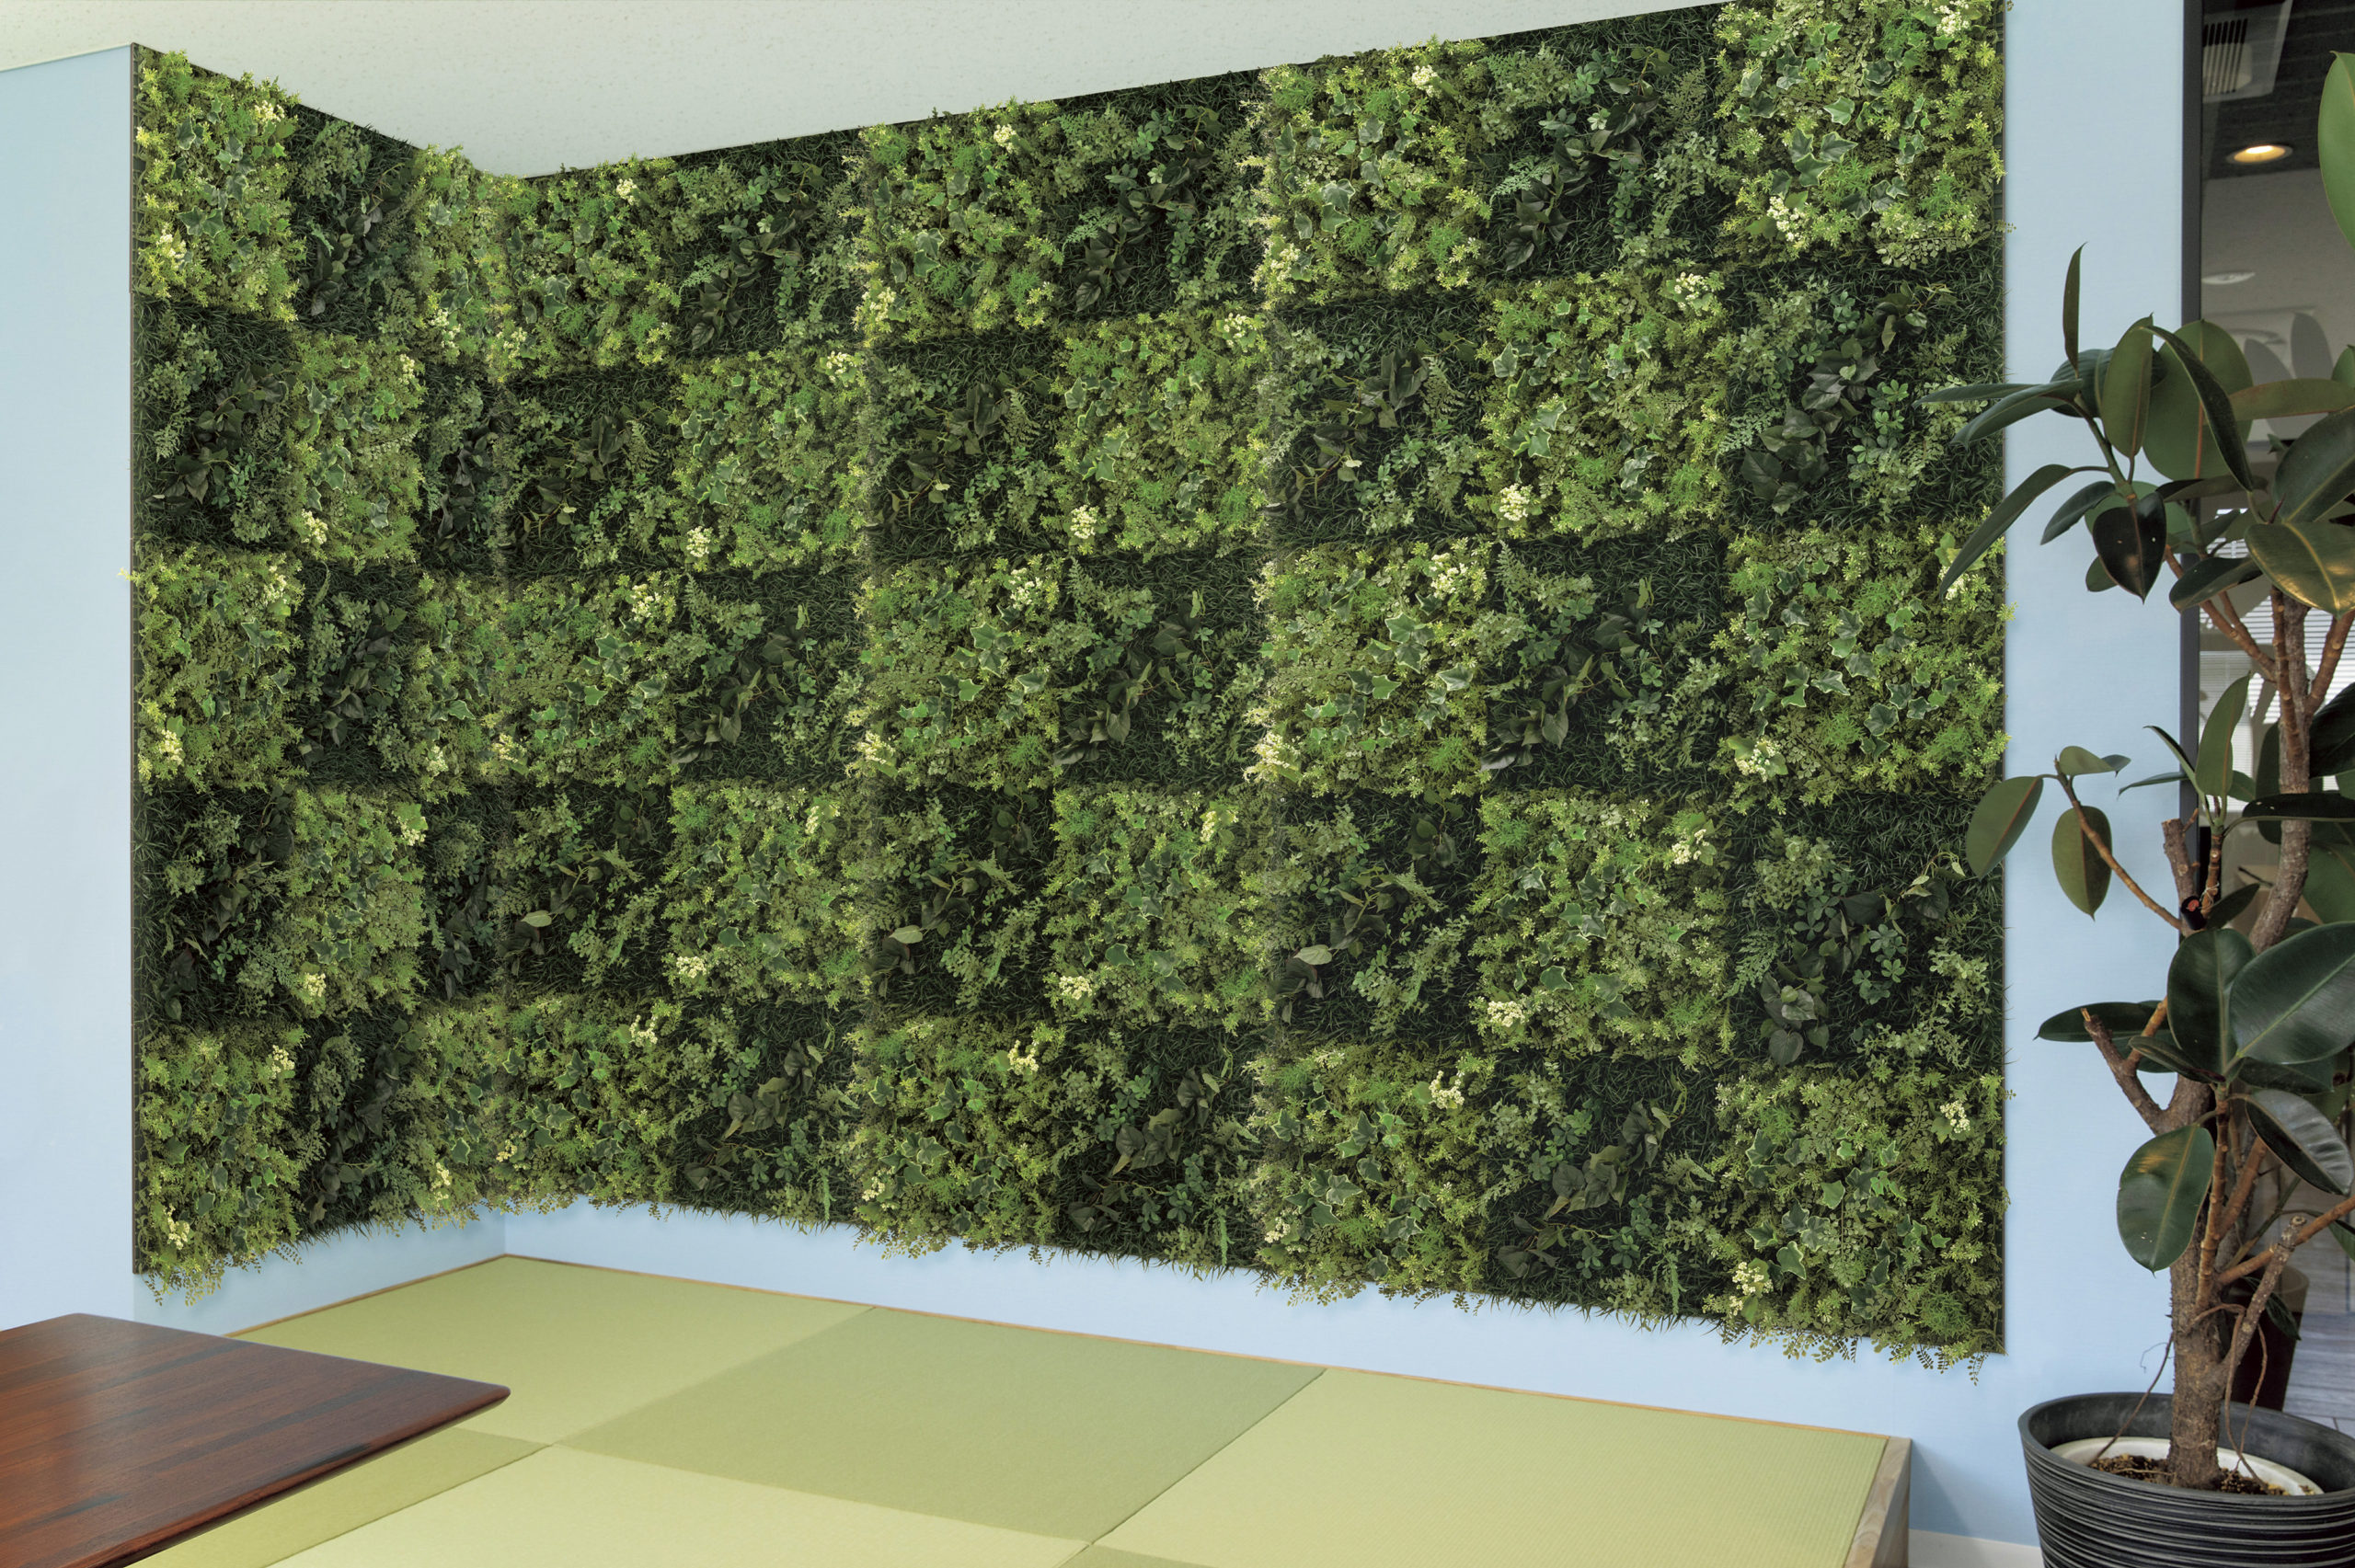 組み合わせデザインできる壁面緑化用グリーンパネル | ブログ5133